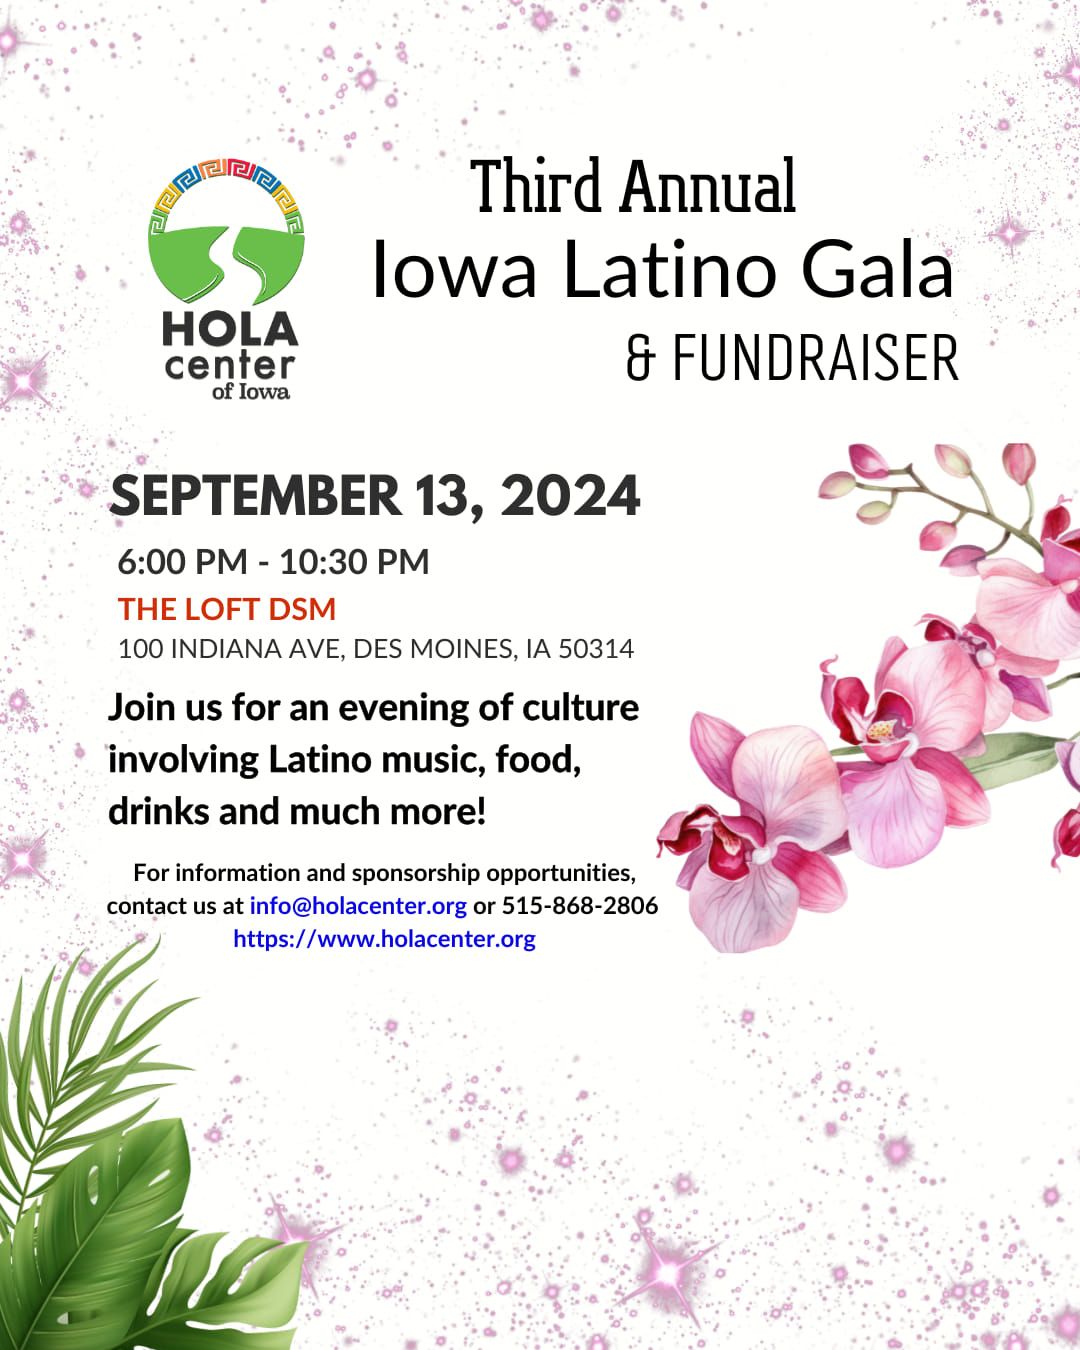 Iowa Latino Gala & Fundraiser